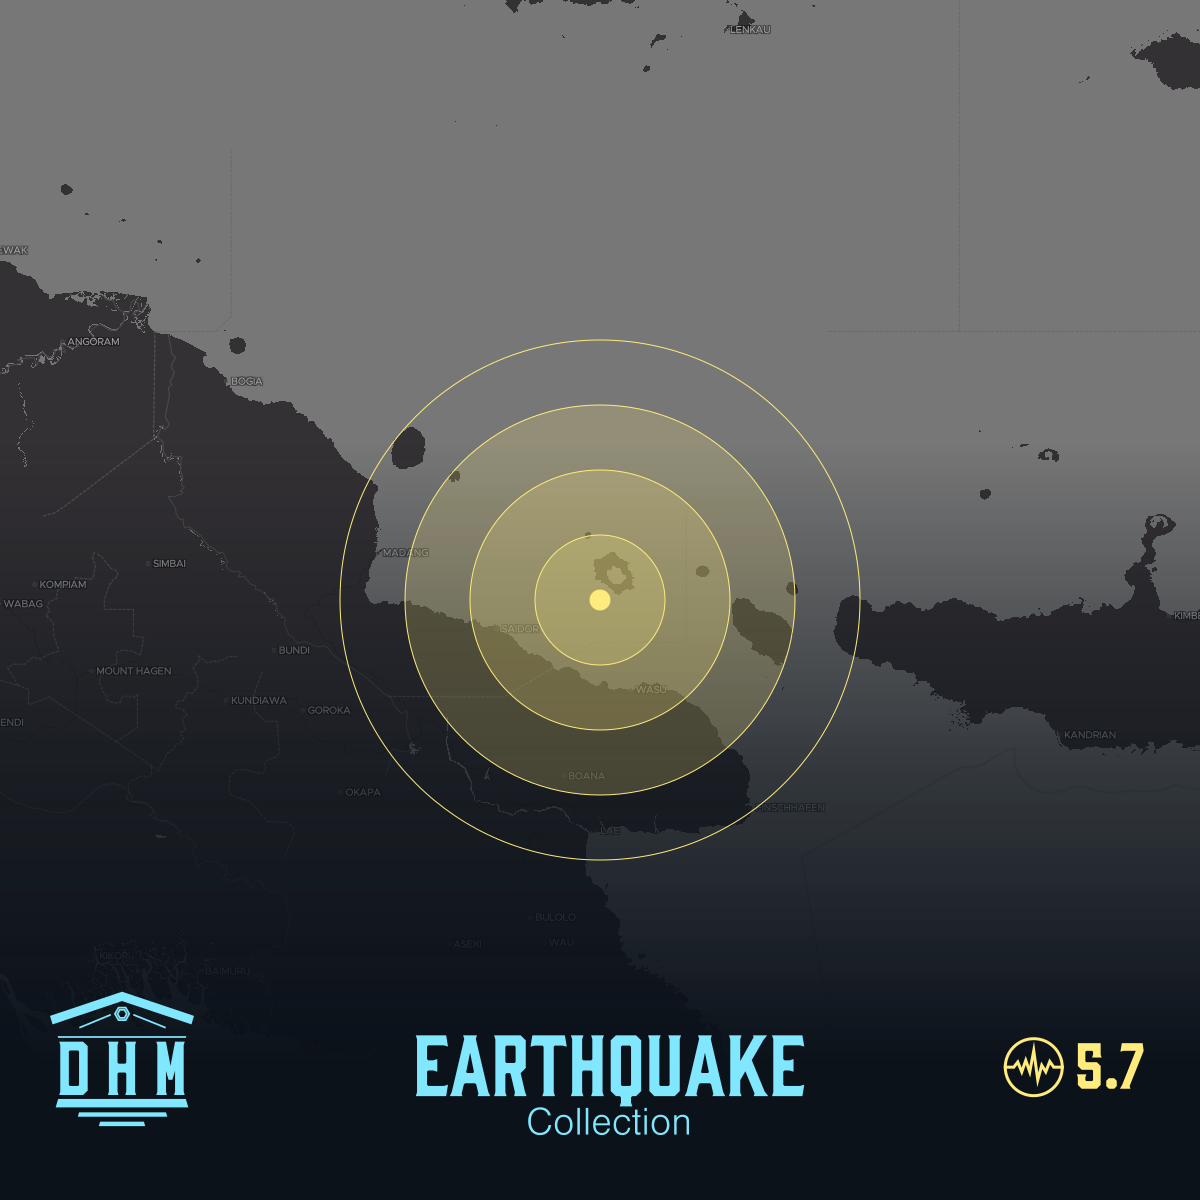 DHM: M5+ Quake us7000i9uu